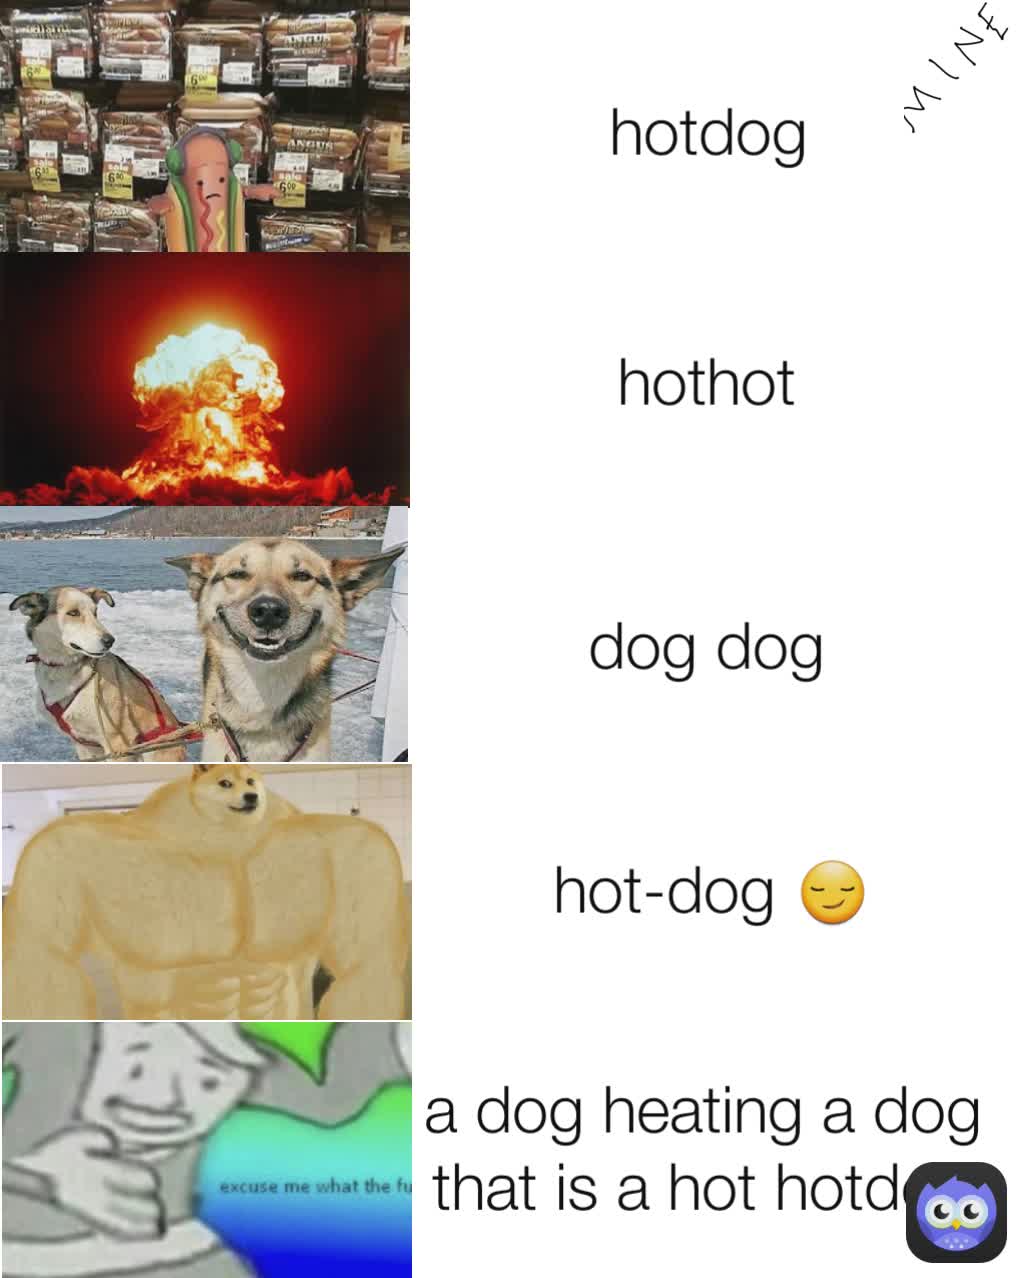 a dog heating a dog that is a hot hotdog hot-dog 😏 dog dog hothot hotdog